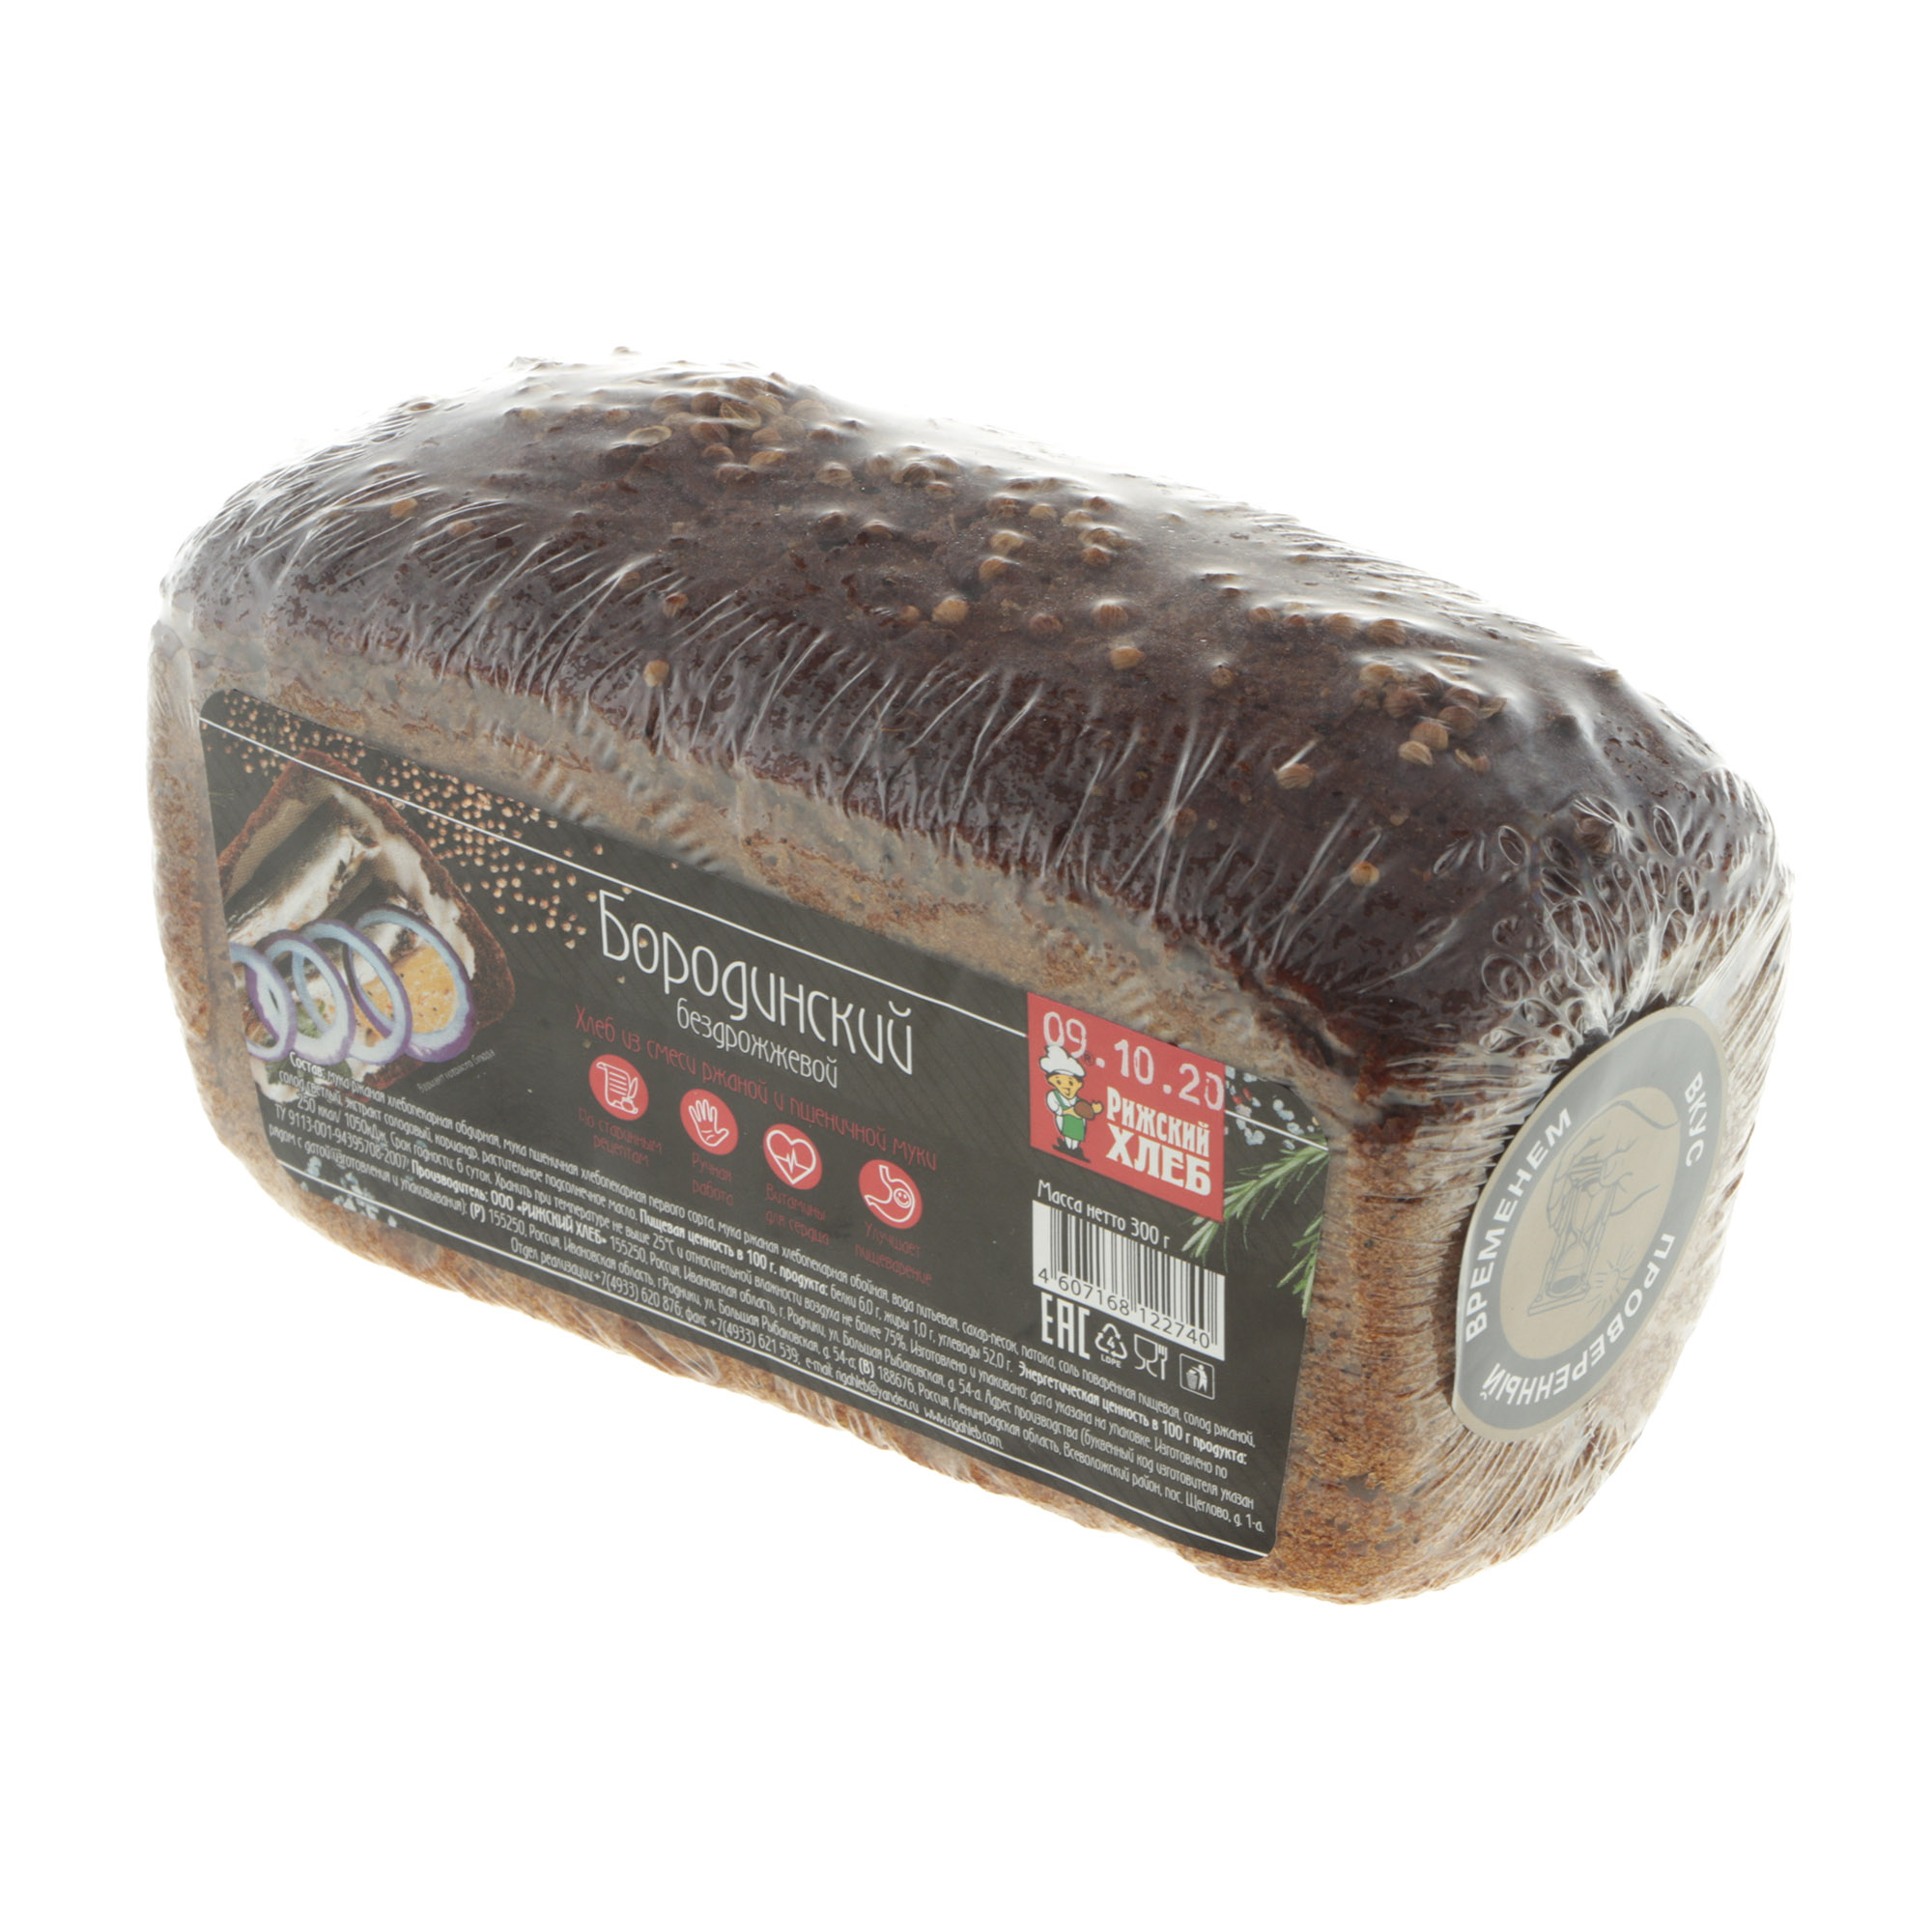 Хлеб Рижский хлеб бородинский 300 г хлеб рижский хлеб ржаной со злаками нарезка 300 г